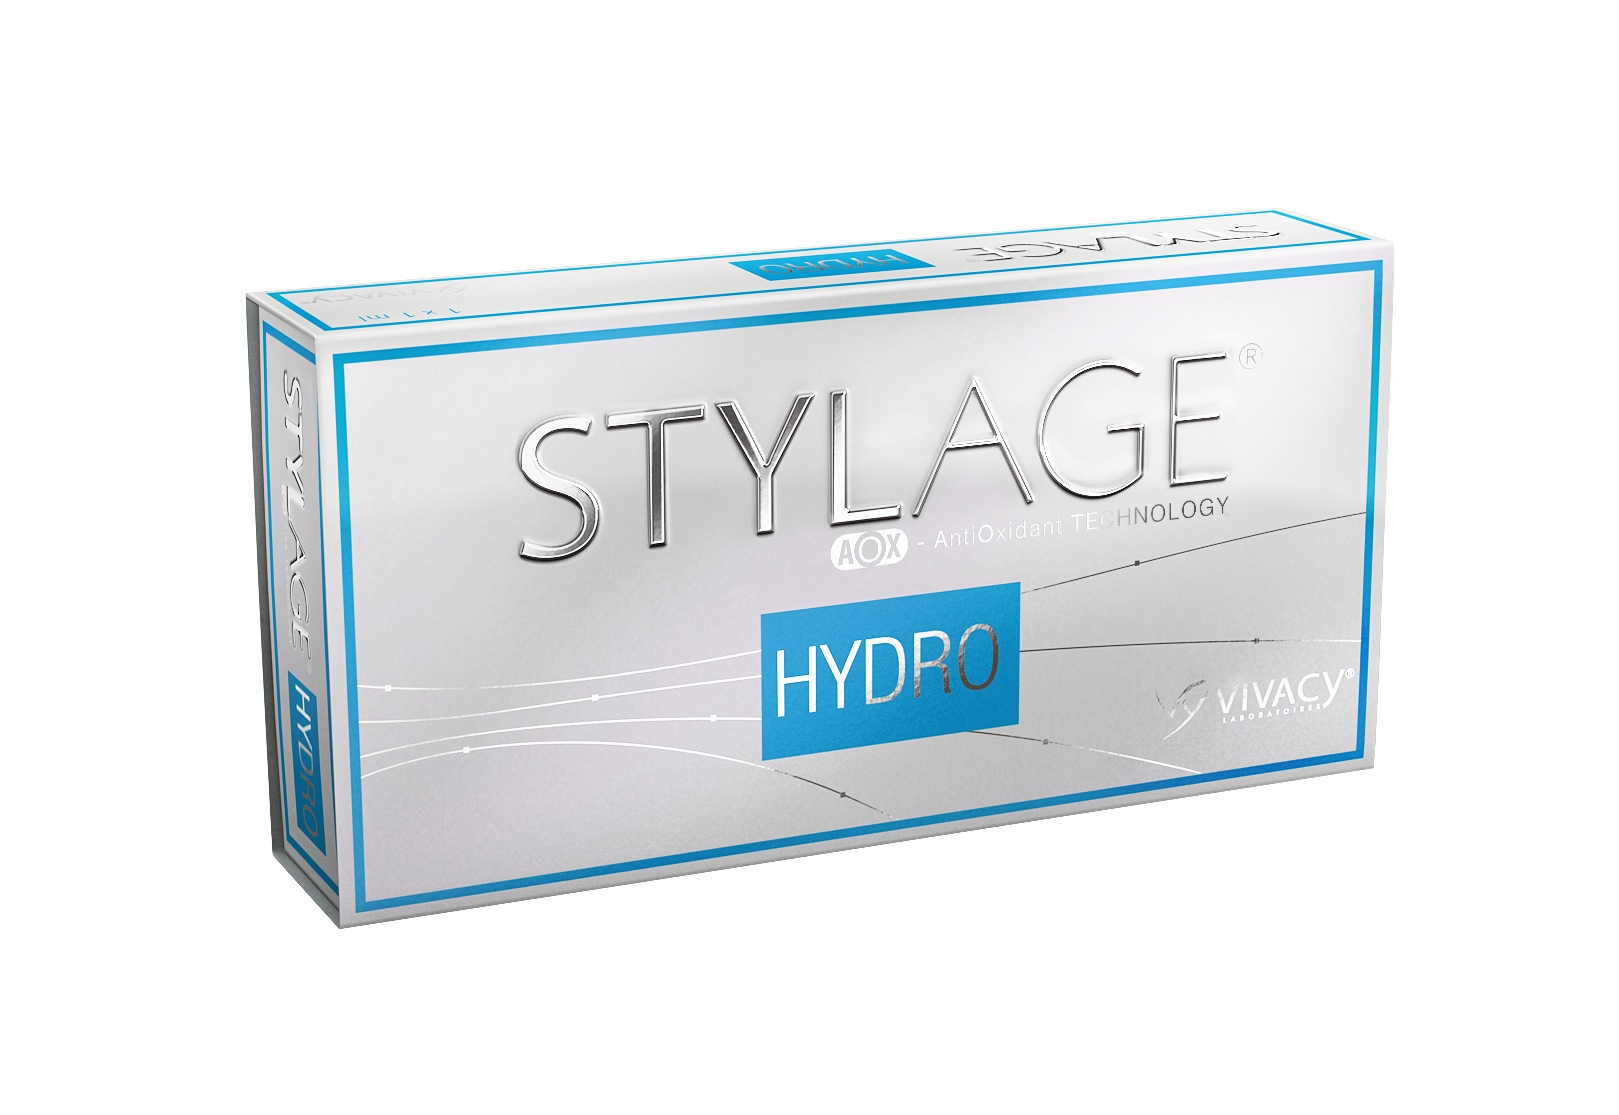 Стеллаж губы цена. Stylage 1ml. Стилаж Stylage филлер. Stylage Hydromax (1*1.0 ml). Stylage m (2*1.0 ml).